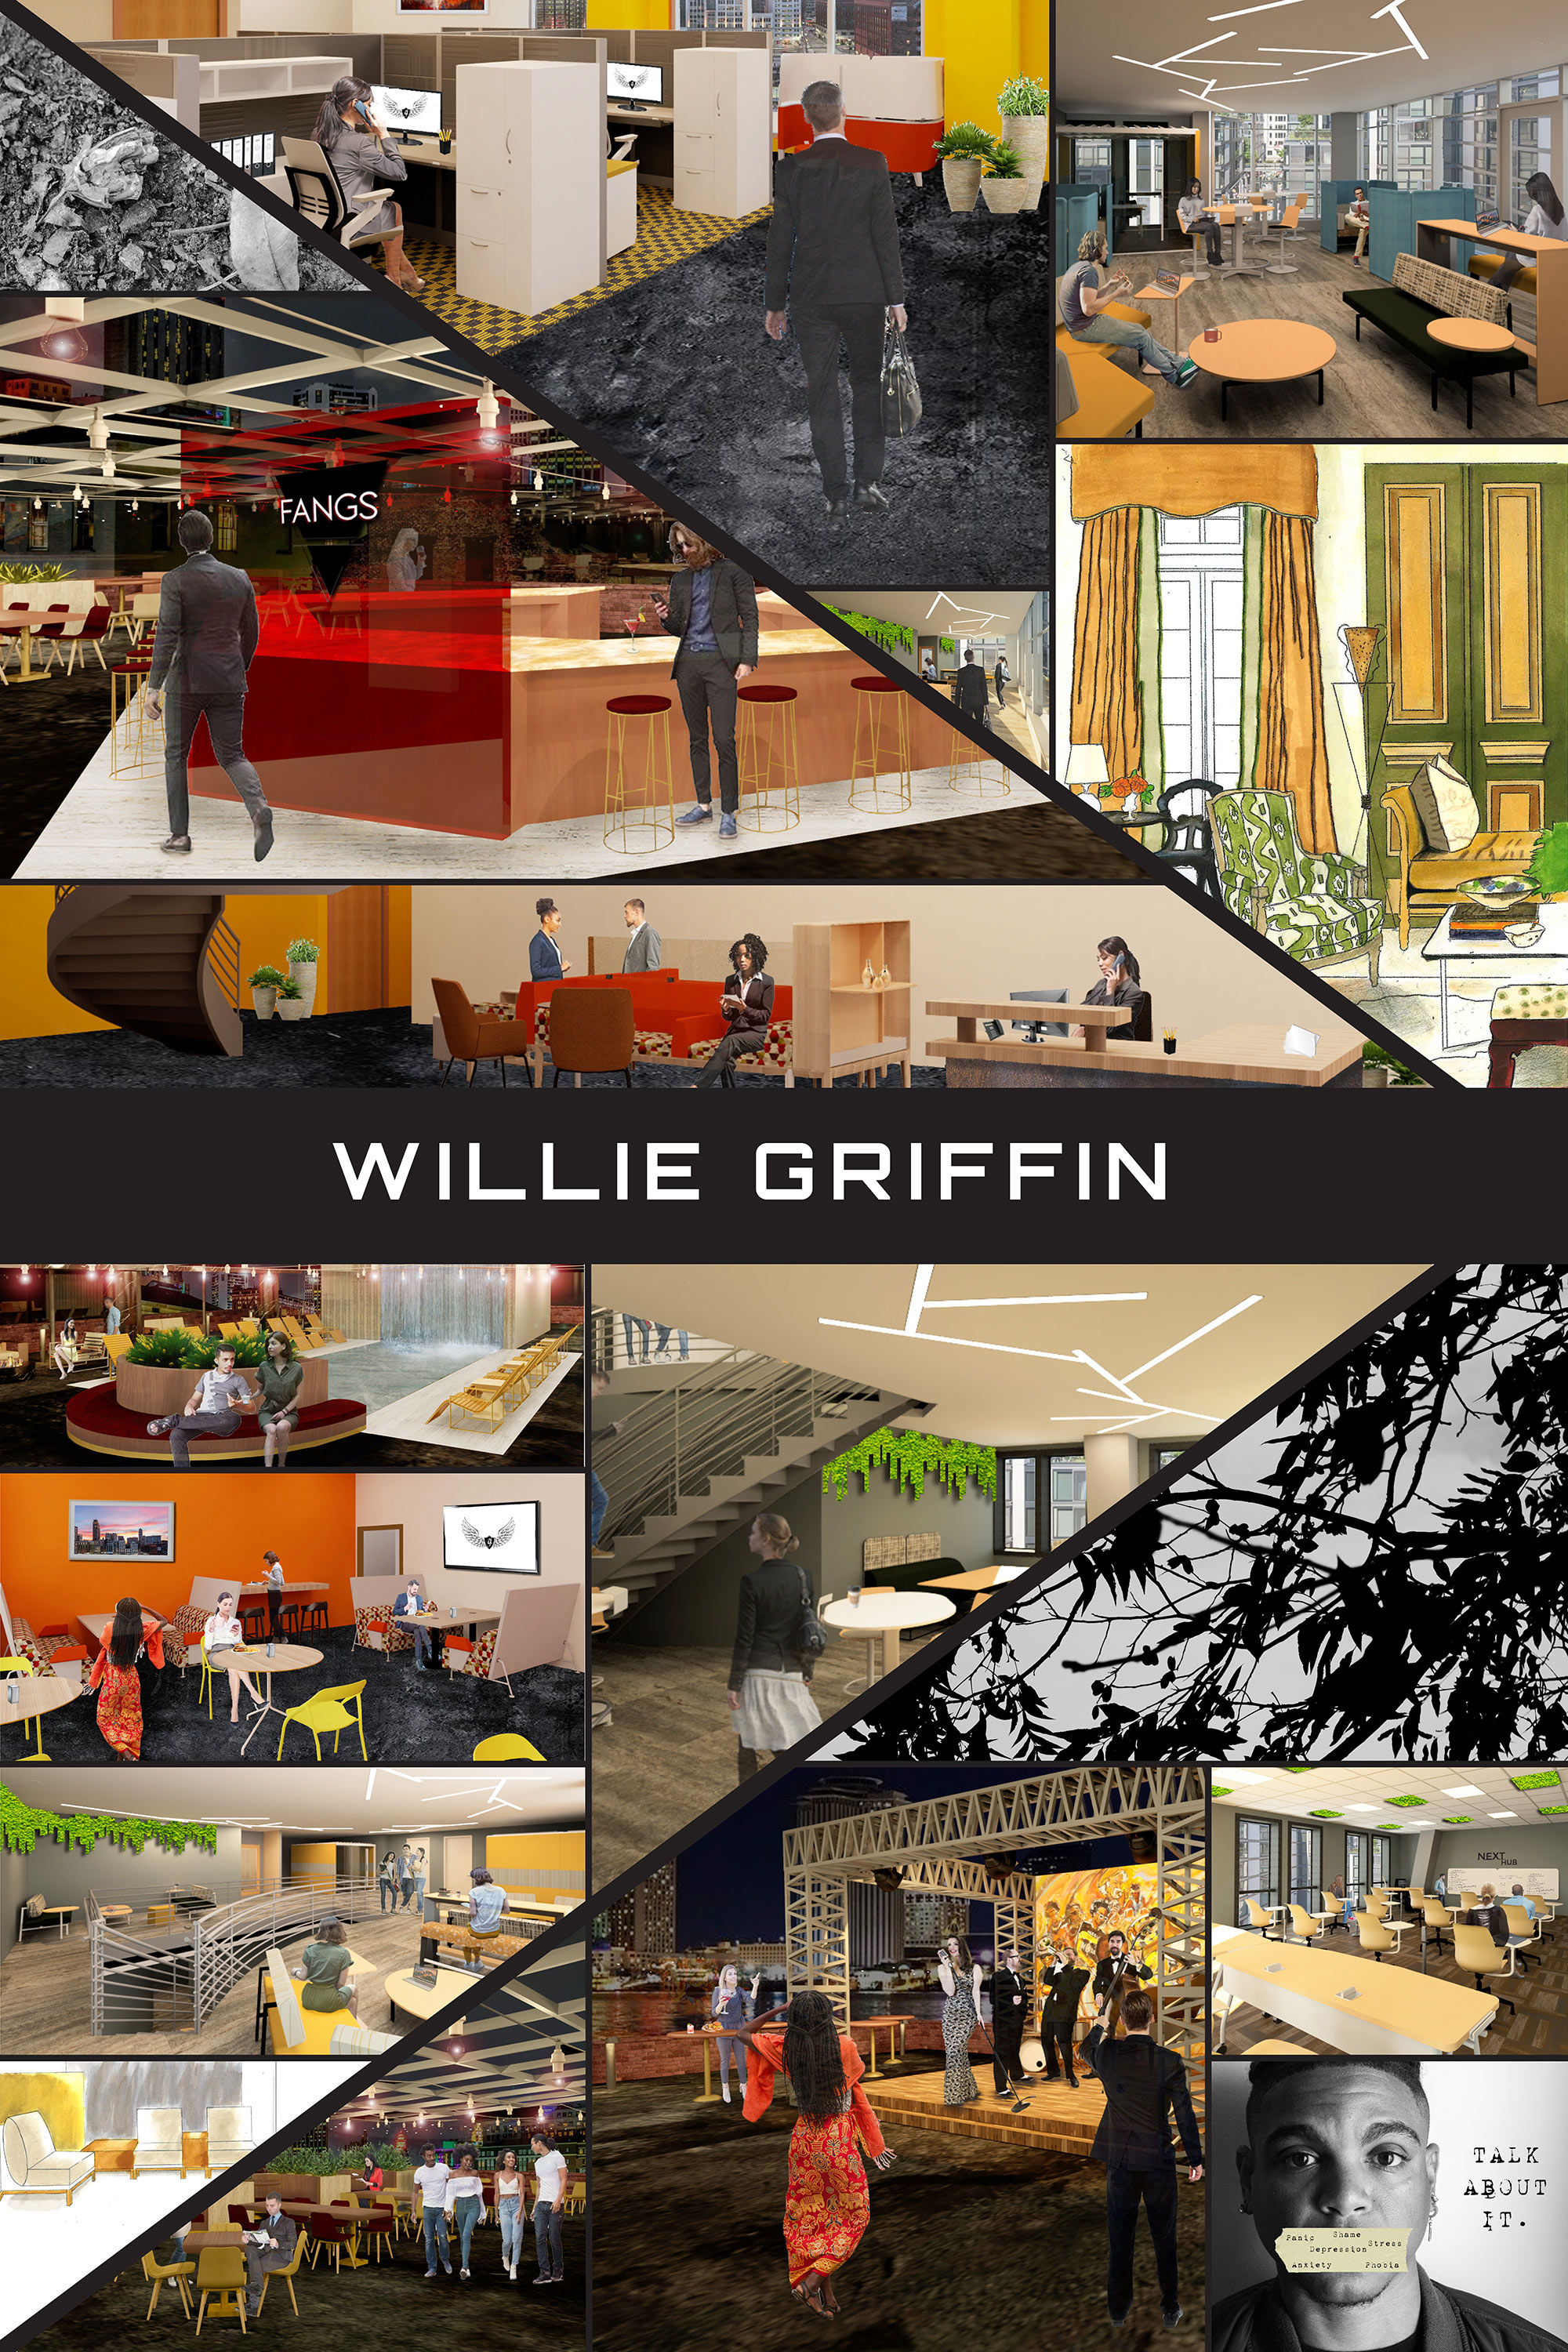 Willie Griffin's senior exhibit board